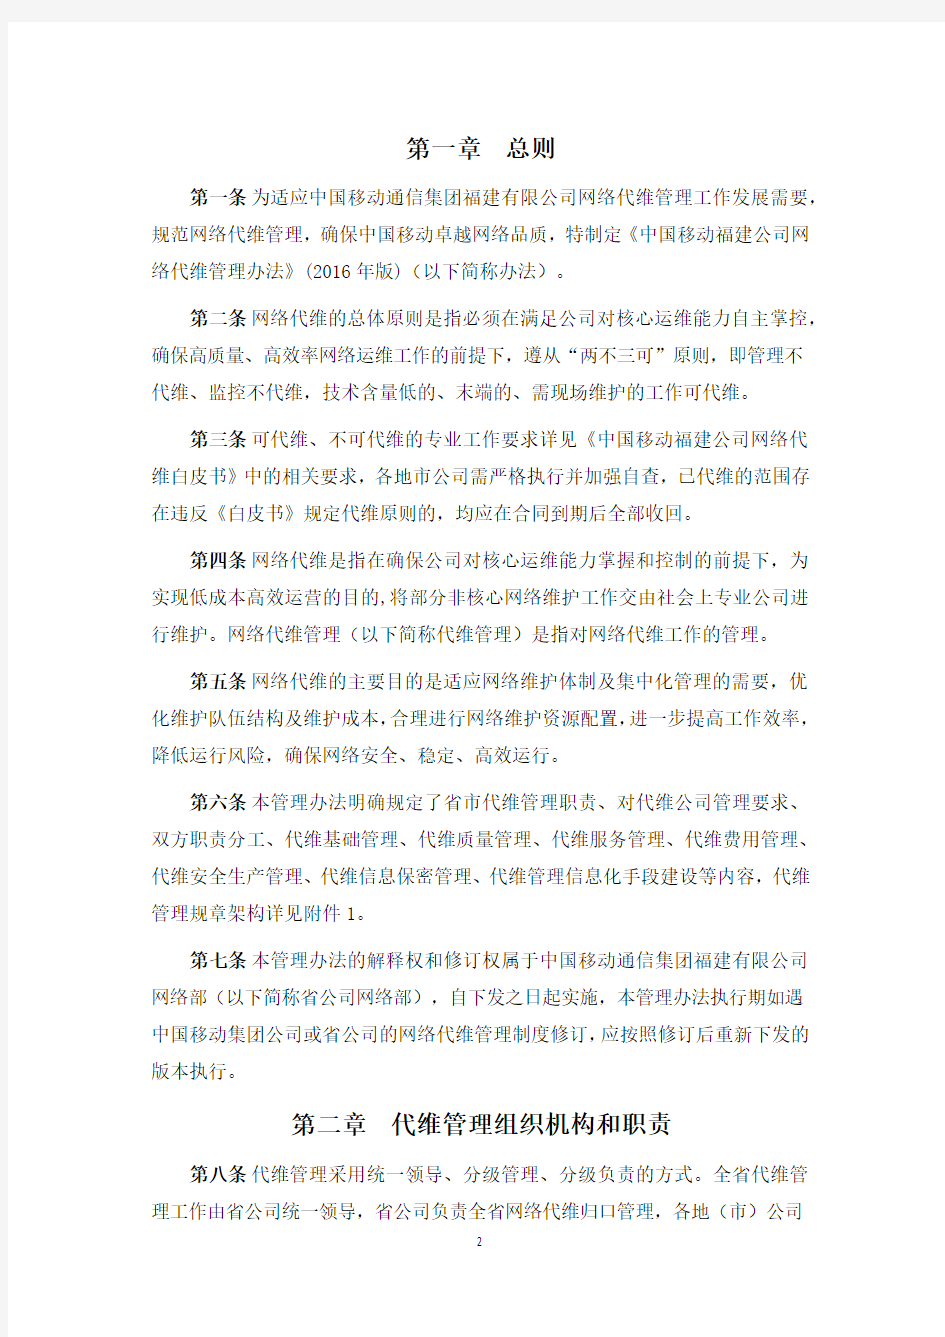 中国移动福建公司网络代维管理办法